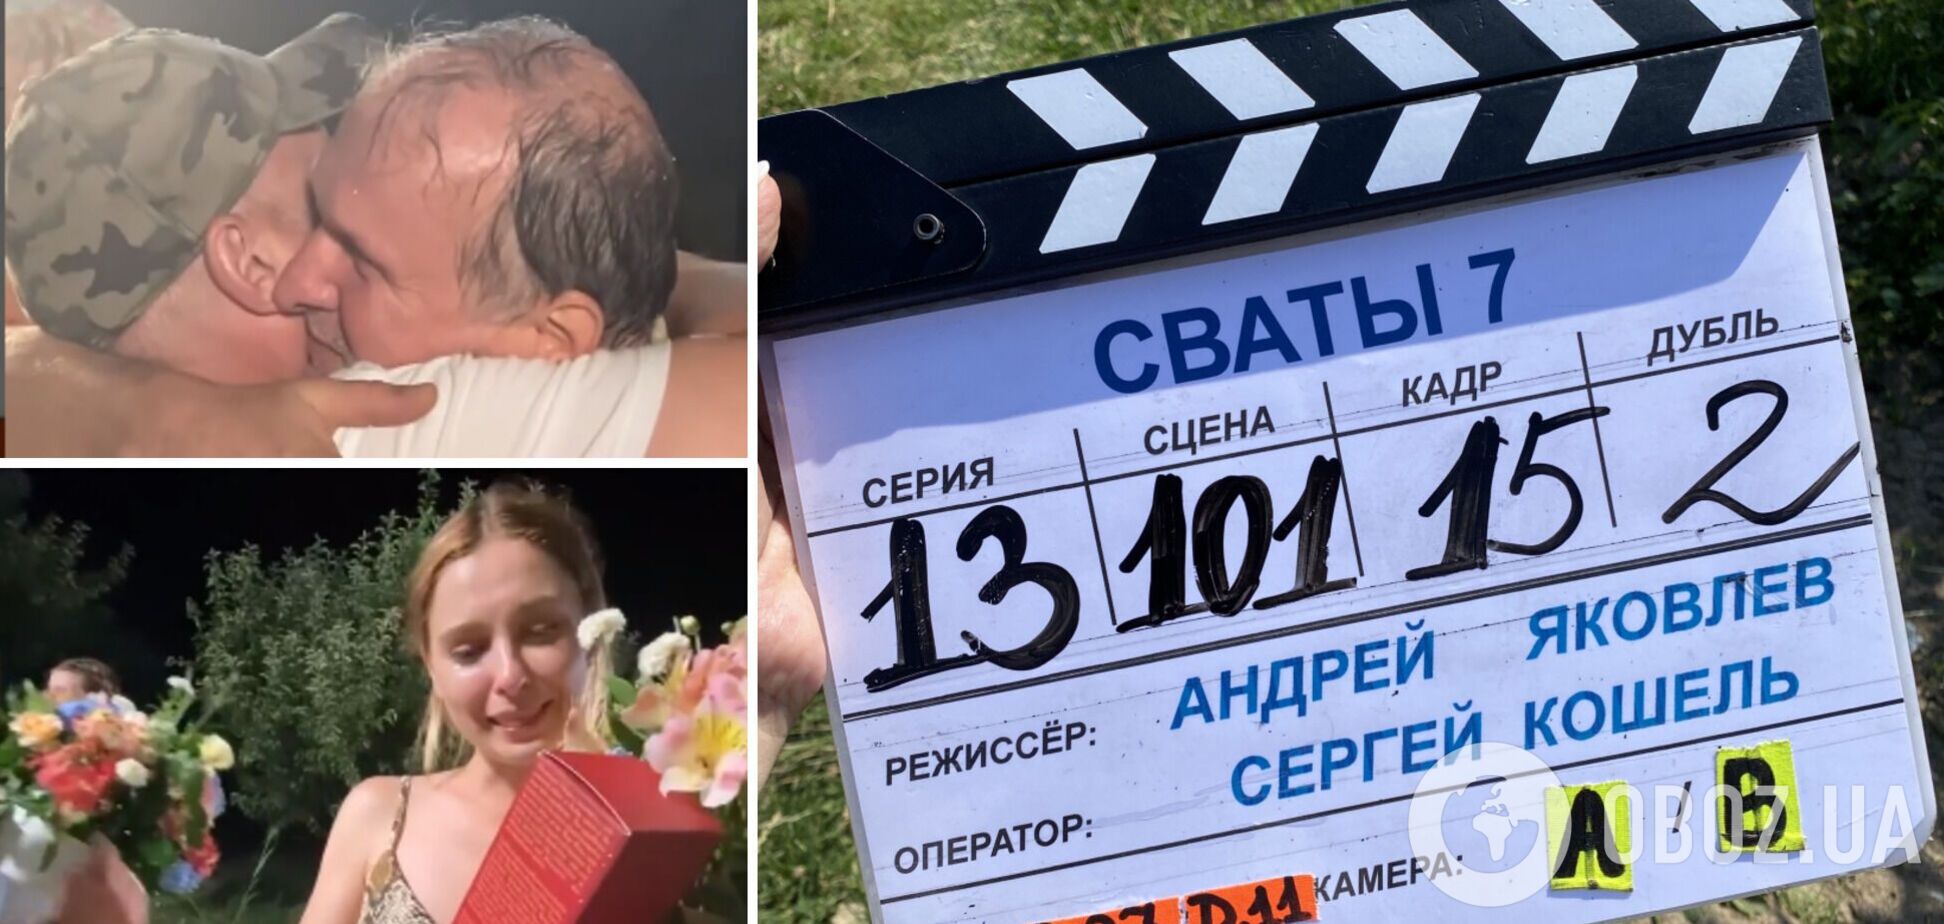 Кошмал та Кравченко плакали: відео зі зйомок 'Сватів 7' злили в мережу